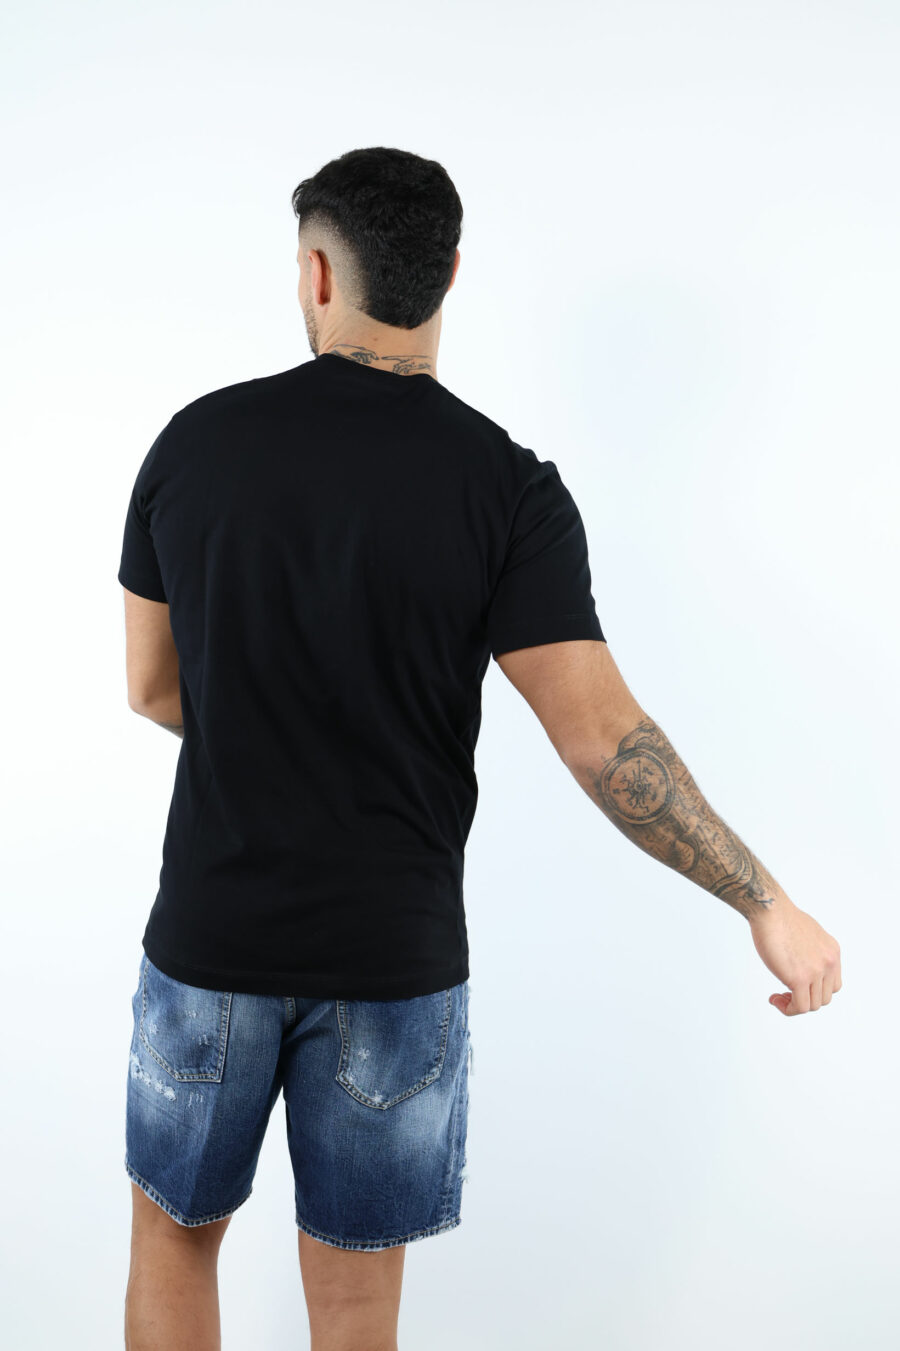 T-shirt noir avec maxilogo "ceresio 9 milano" - 106864